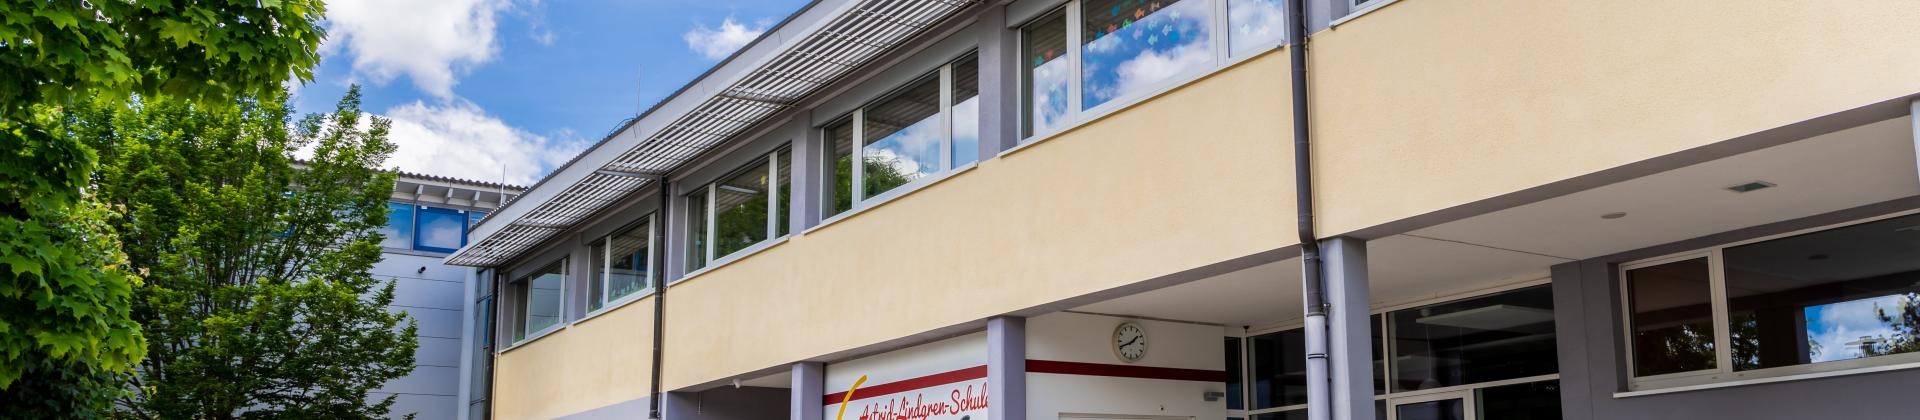 Die Astrid-Lindgren-Schule vom Schulhof aus fotografiert. Ein Flachdachgebäude mit gelb-grauem Anstrich.